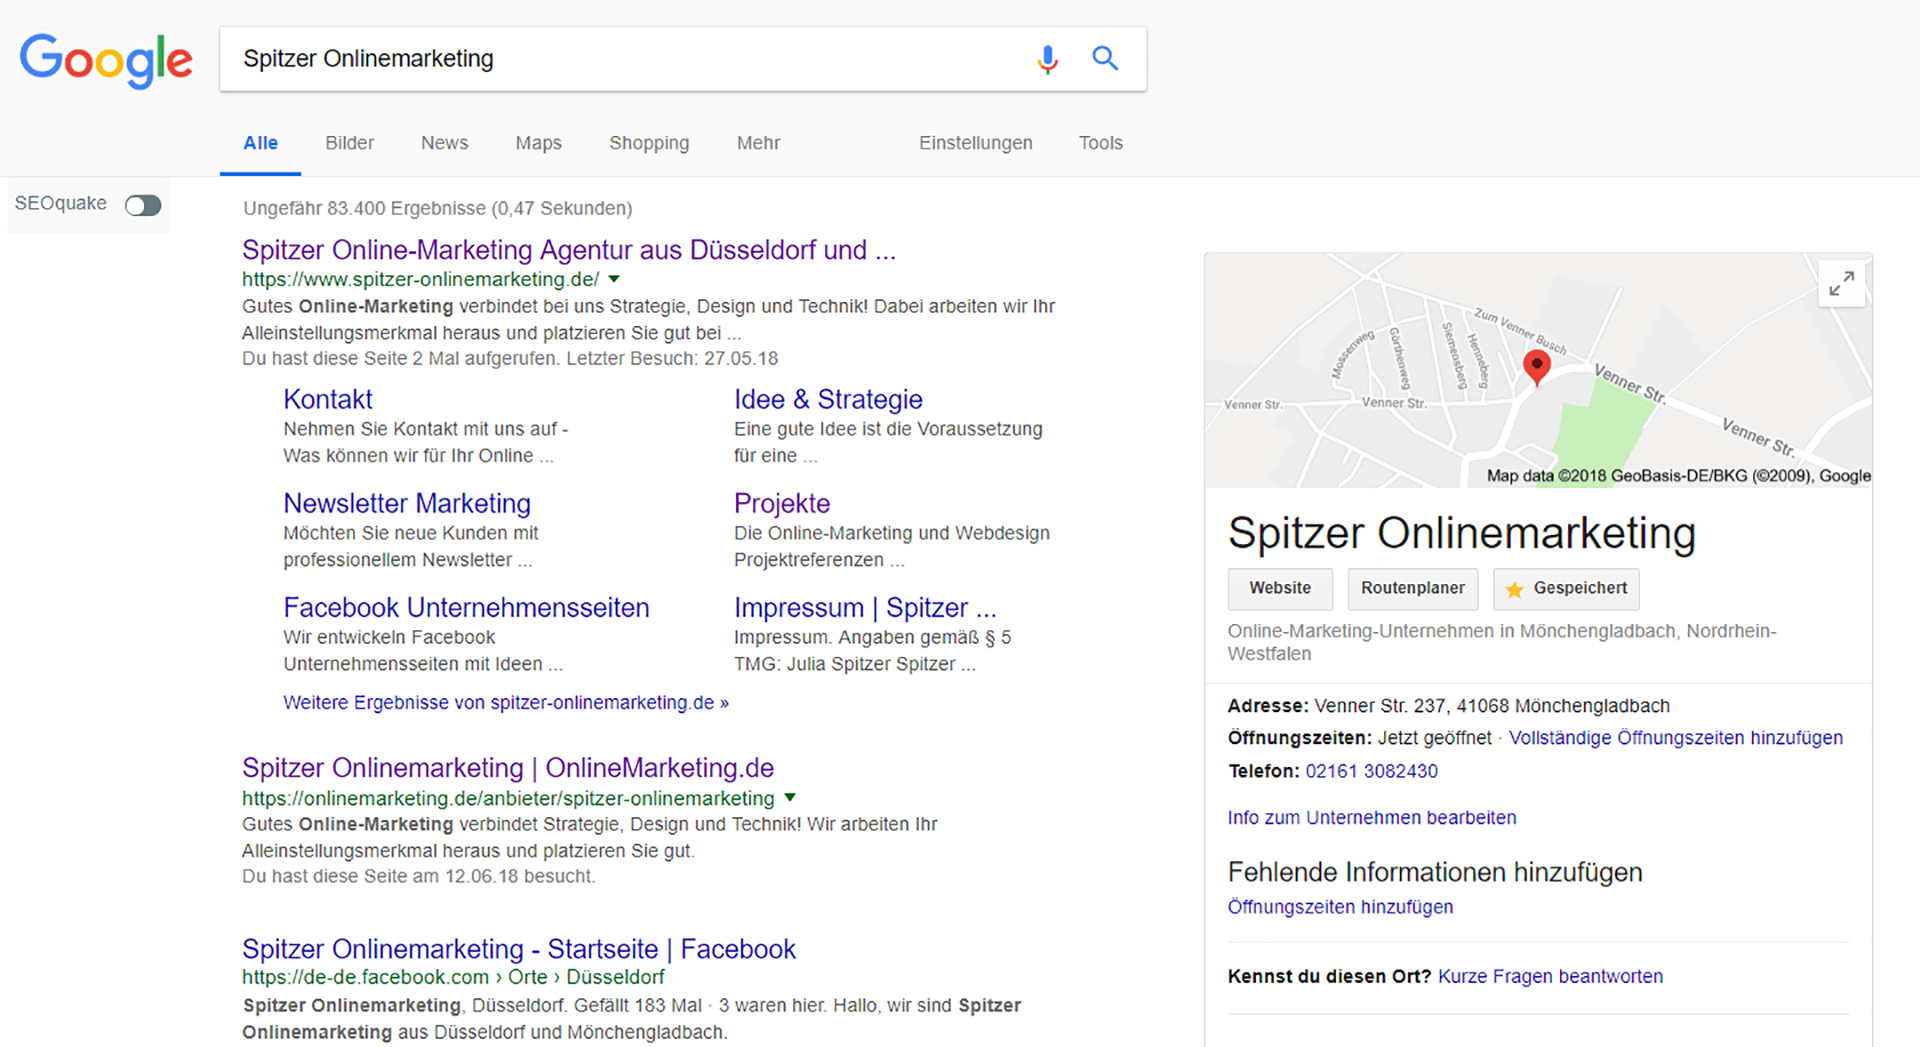 Bild Ergebnisliste Google Suchmaschine Spitzer Onlinemarketing